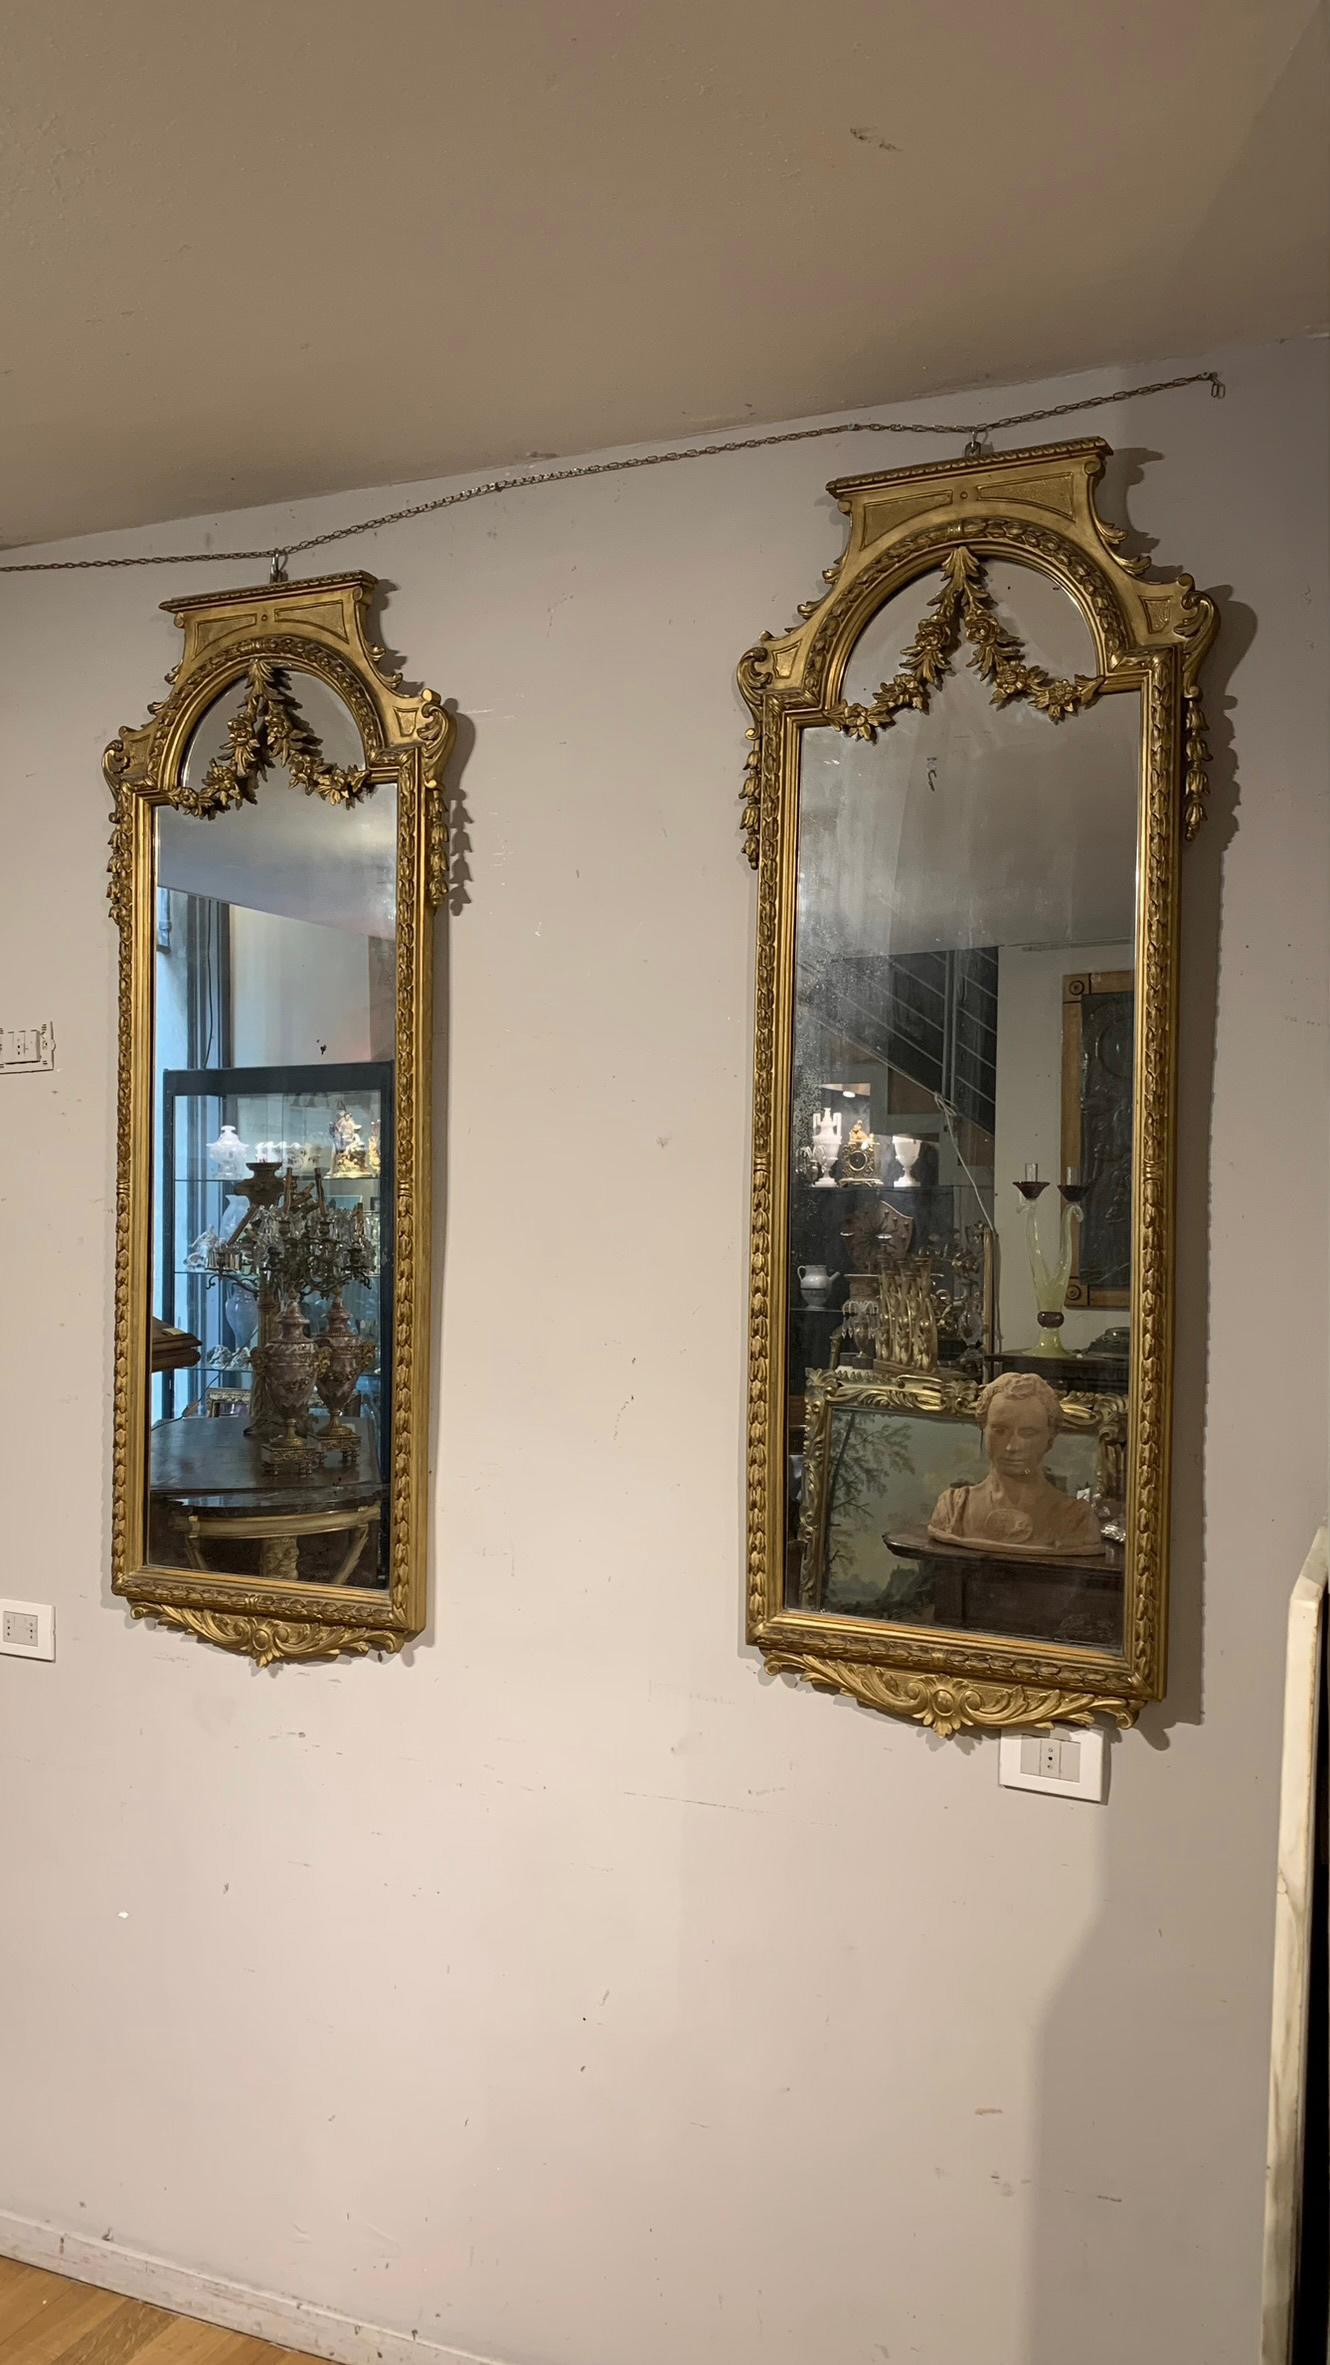 Prächtiges Spiegelpaar im neoklassischen Stil aus geschnitztem und vergoldetem Holz mit reinem Blattgold. Die Spiegel sind mit zarten Pflanzentrauben verziert, die bis zum oberen Teil reichen, wo sie sich zu einer dekorativen Girlande verbinden, die